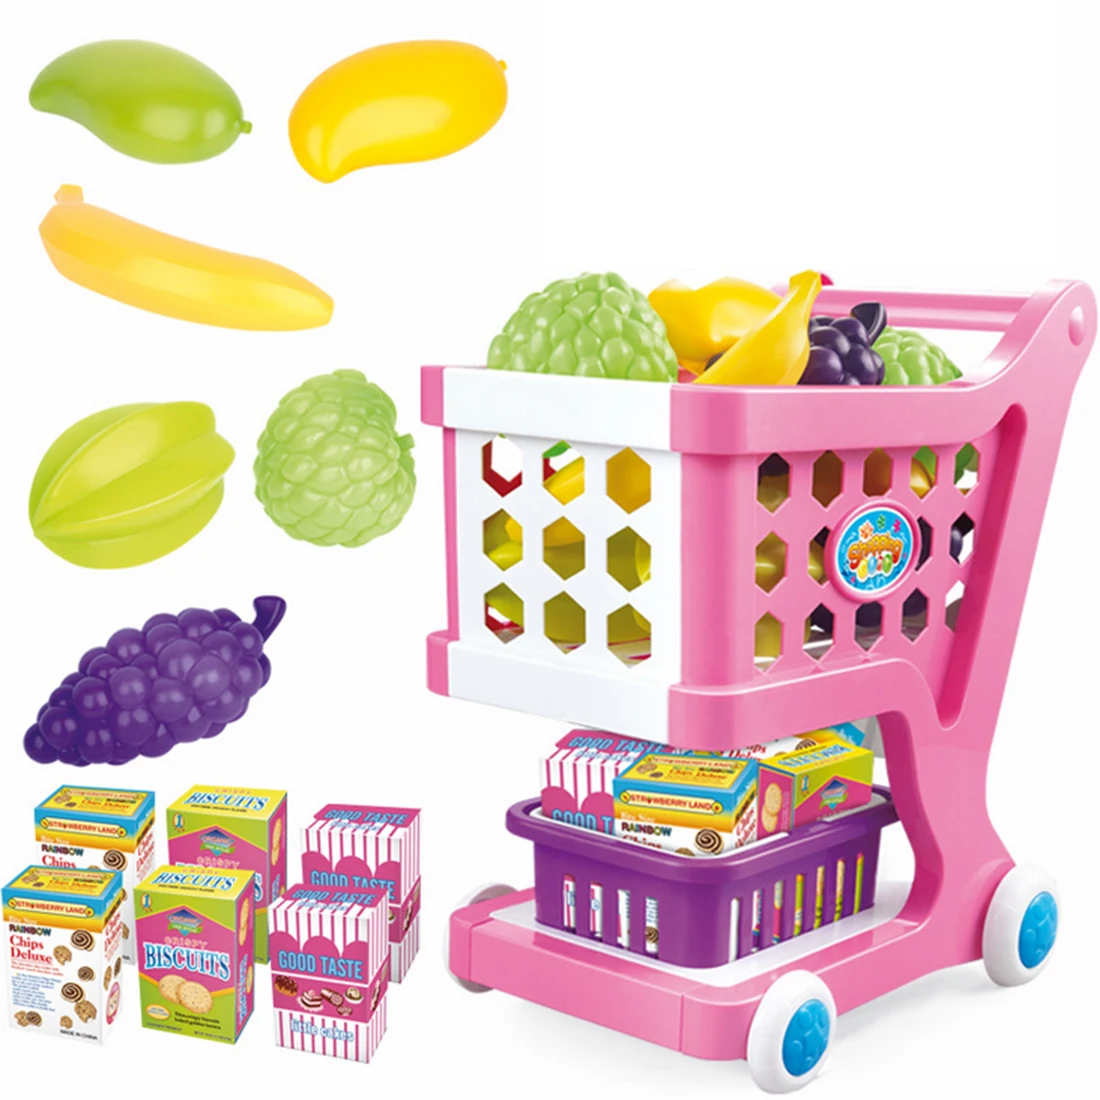 Супермаркет тележка моделирование Тележка для покупок с фруктами овощи продукты игрушки для детей Раннее Обучение